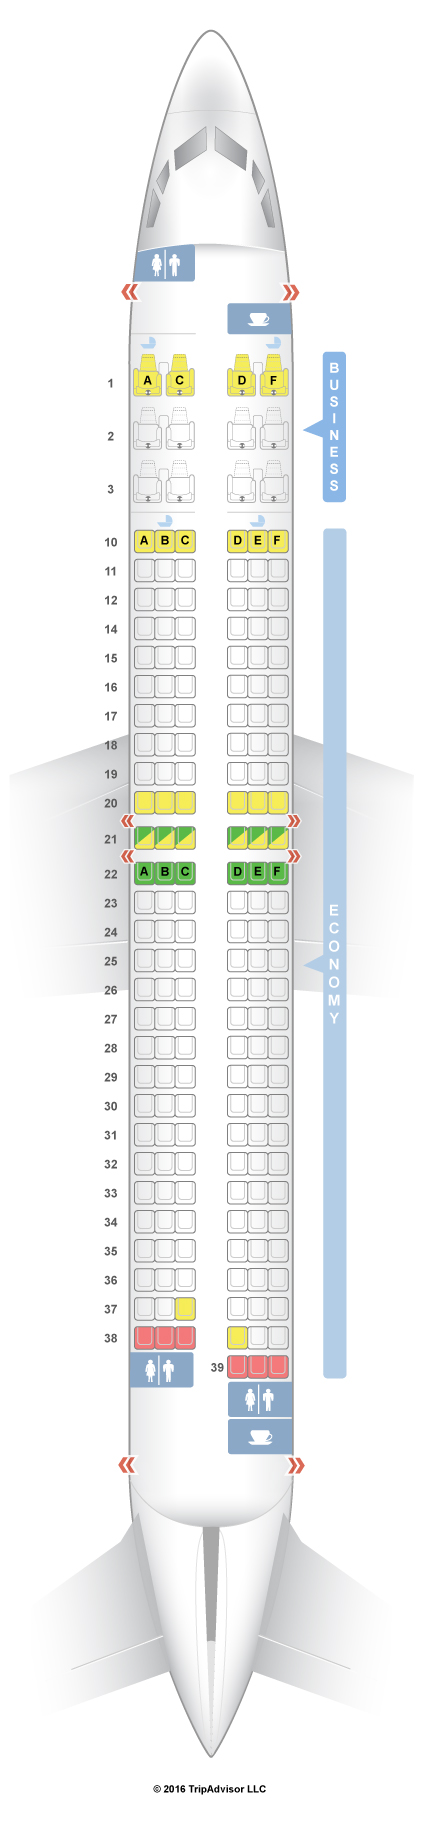 737 900 Aircraft Seating Chart